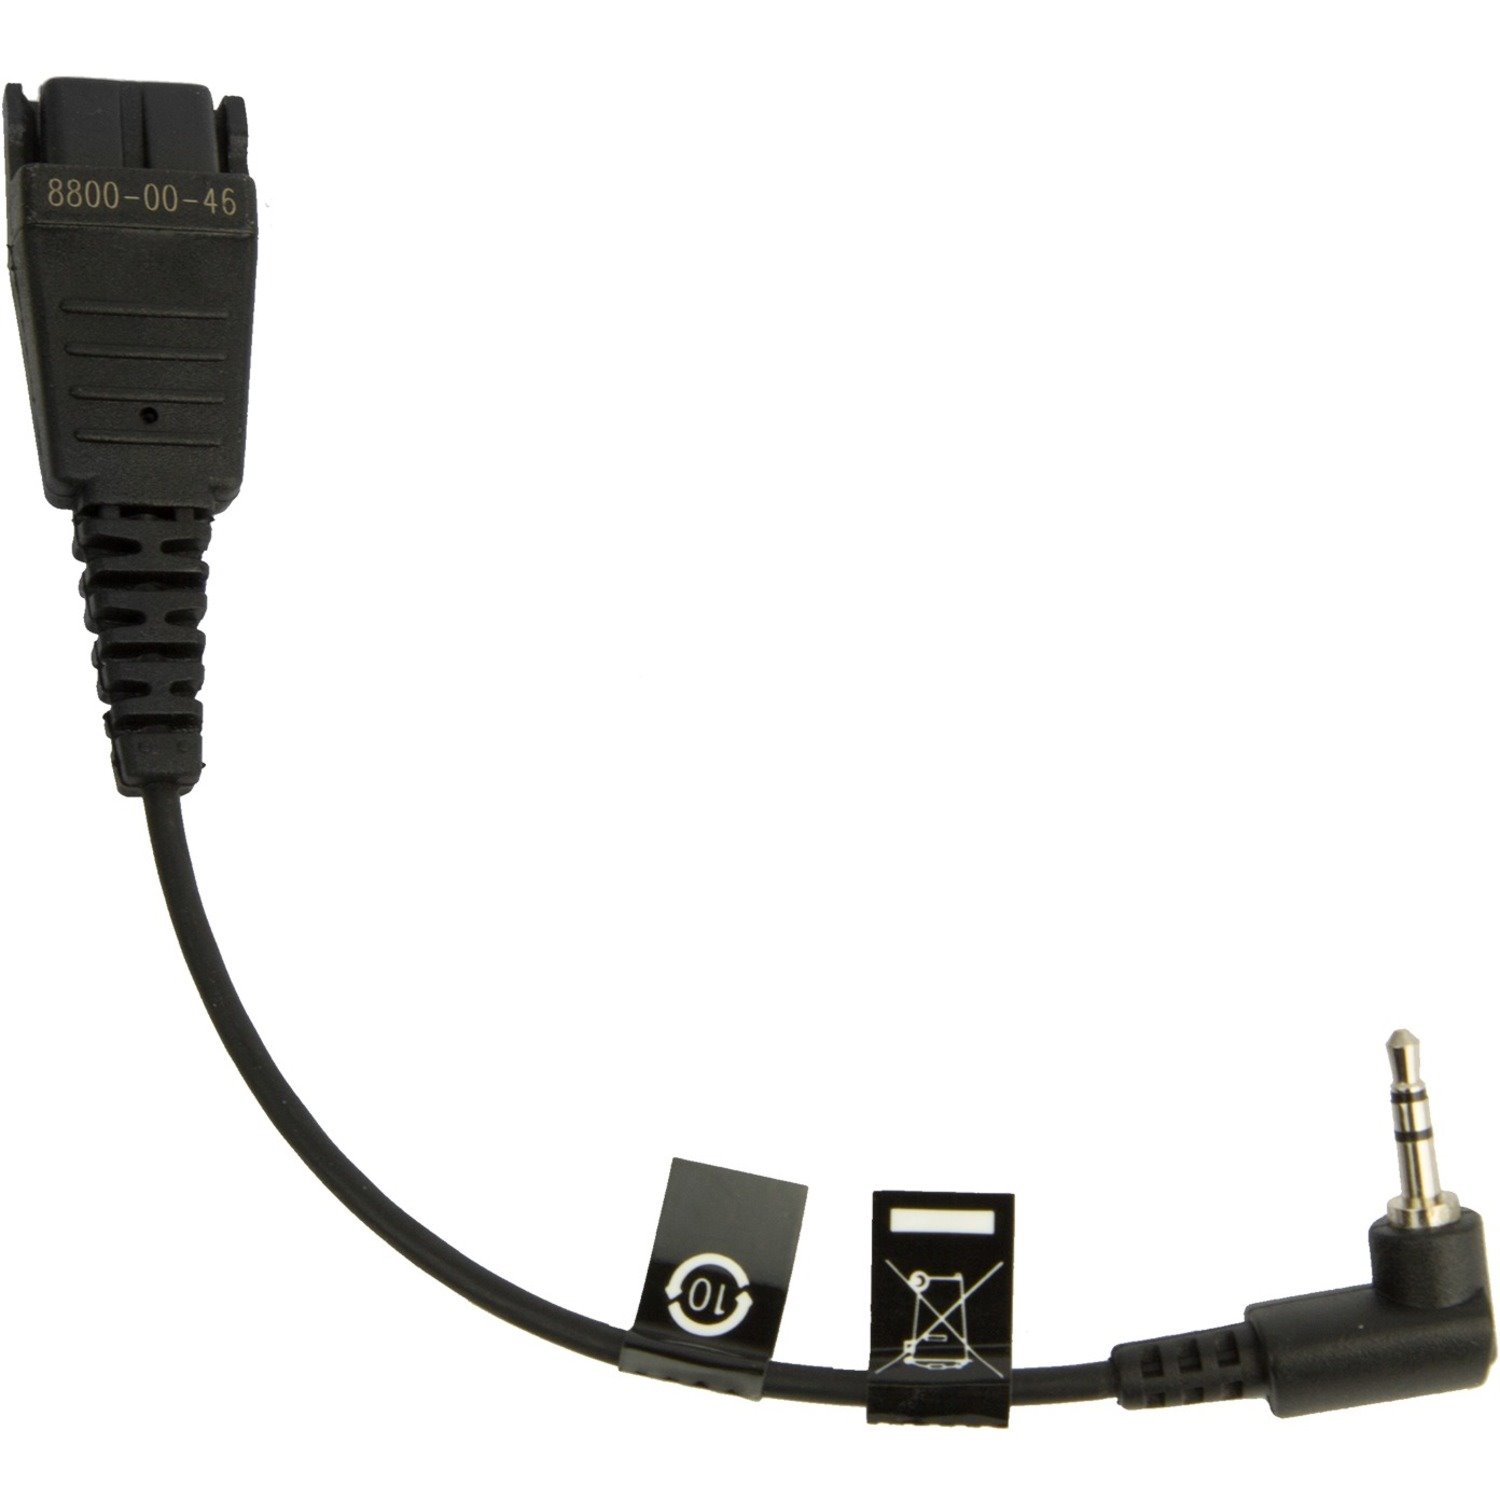 Jabra 8800-00-46 Audio Cable